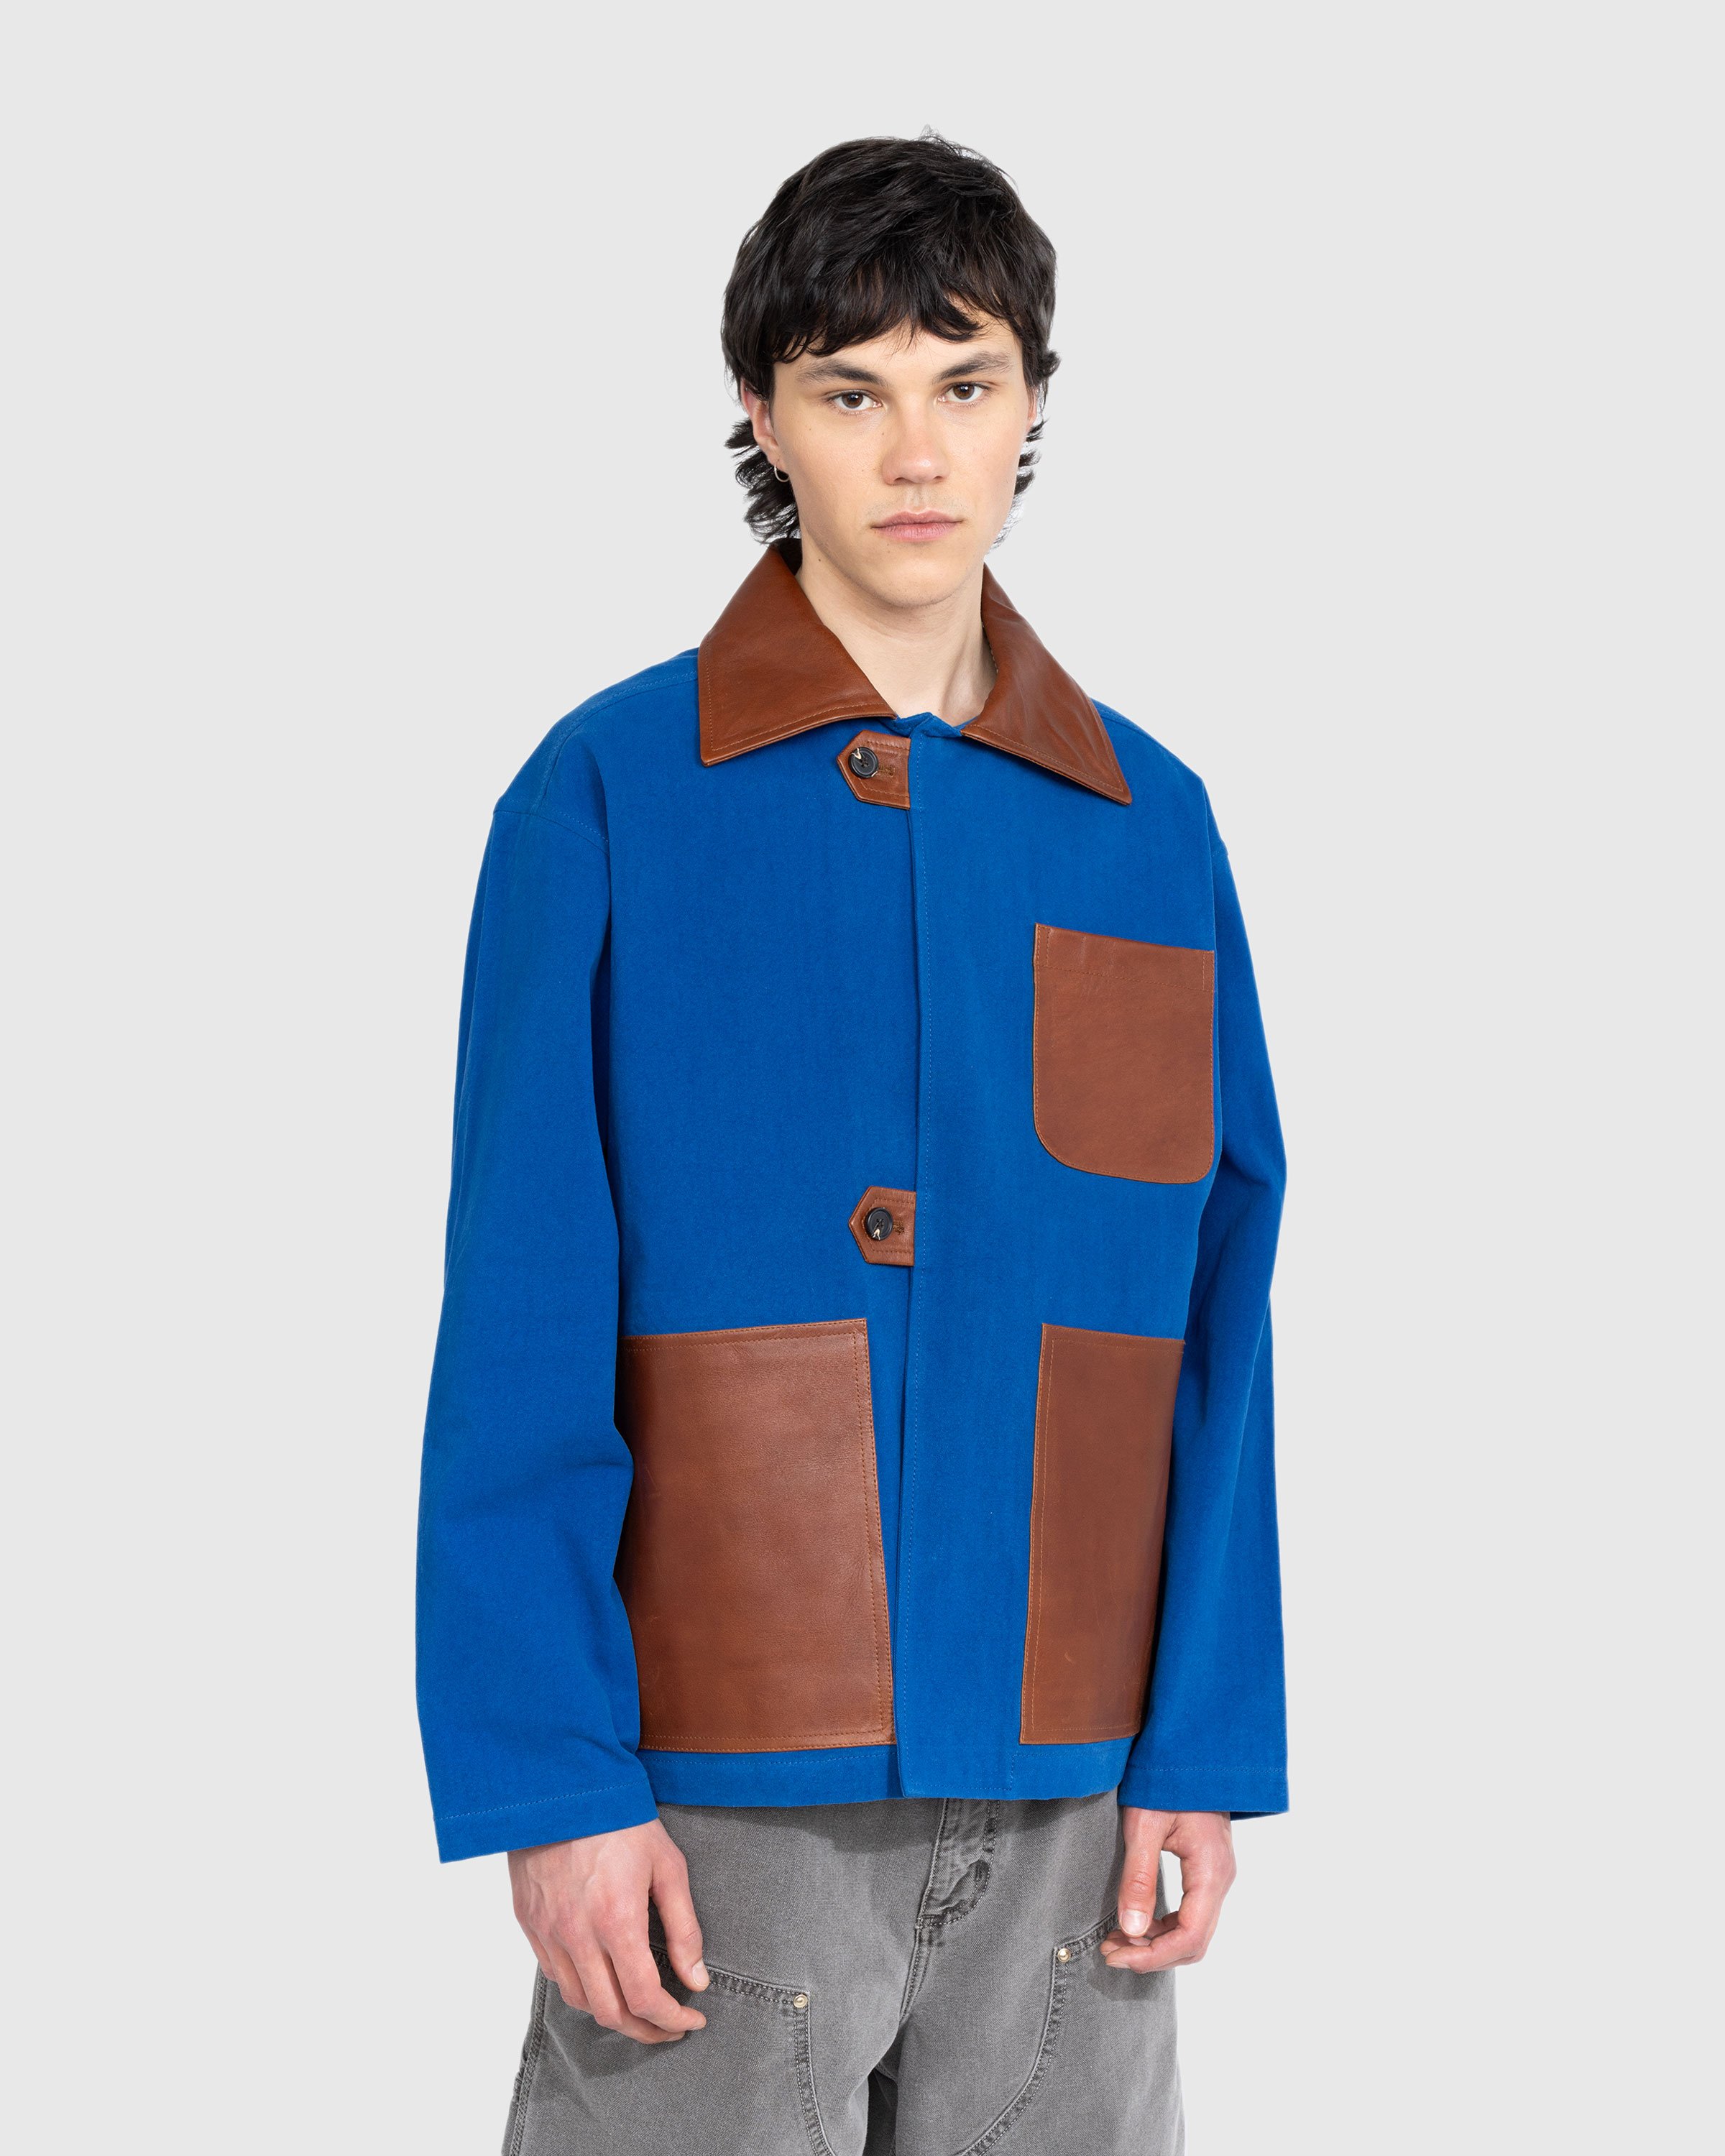 Bode - Leather Tab Jacket - Clothing - Blue - Image 2